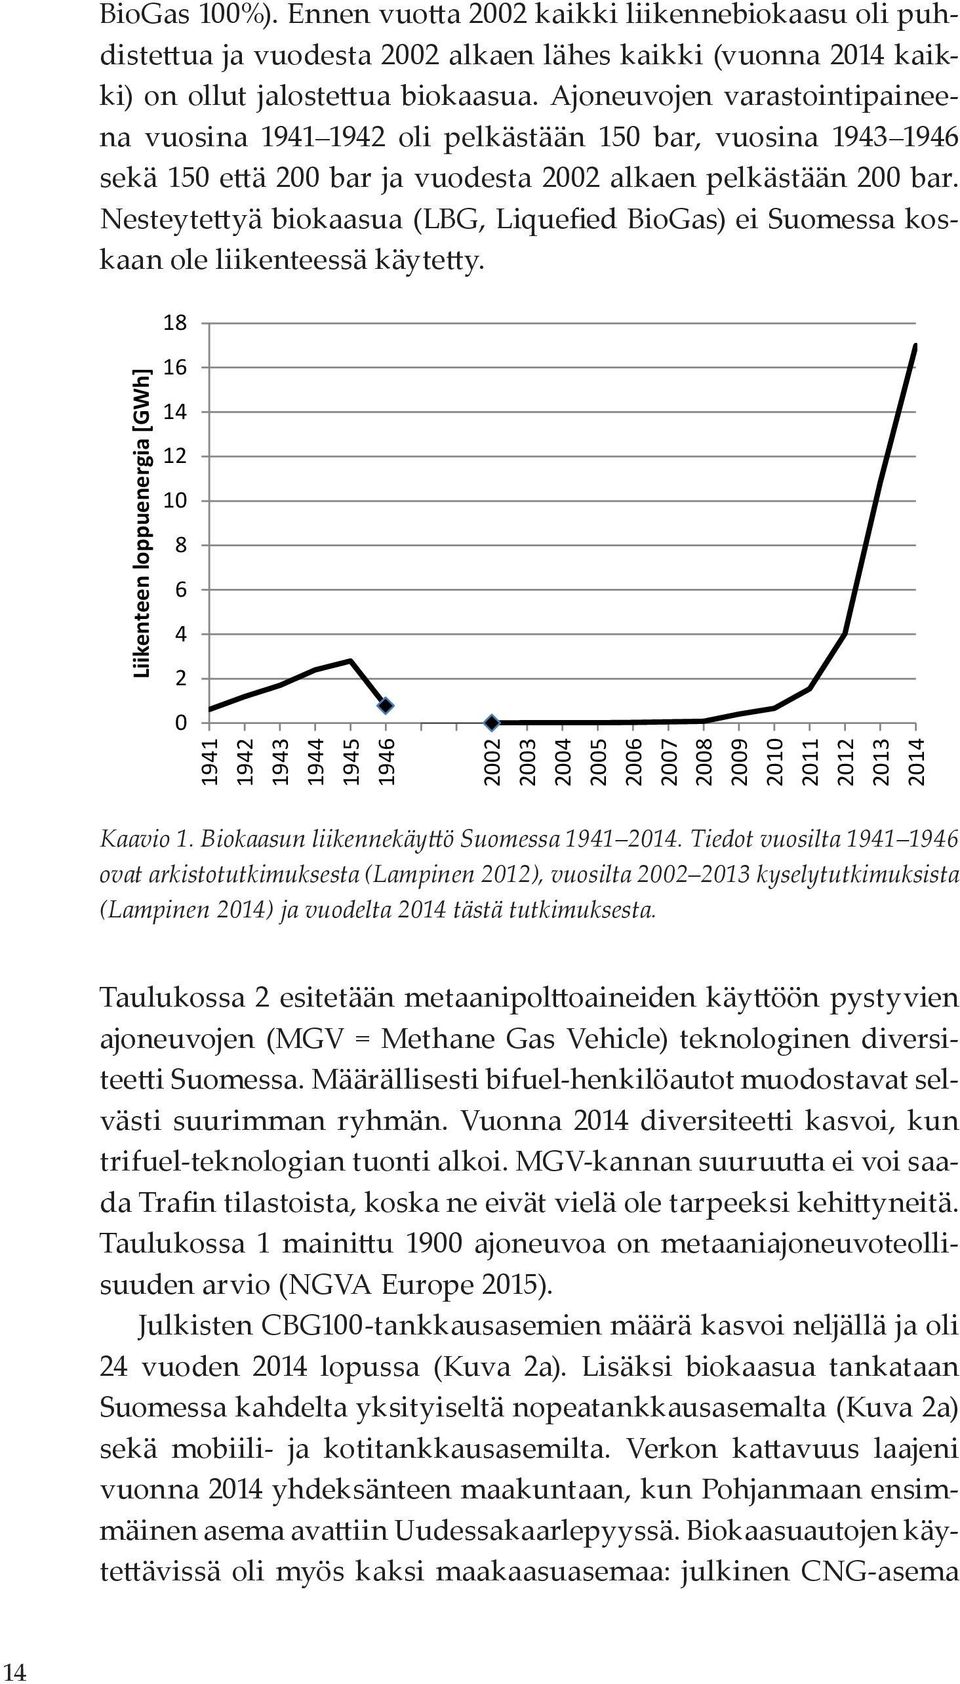 Nesteytettyä biokaasua (LBG, Liquefied BioGas) ei Suomessa koskaan ole liikenteessä käytetty.